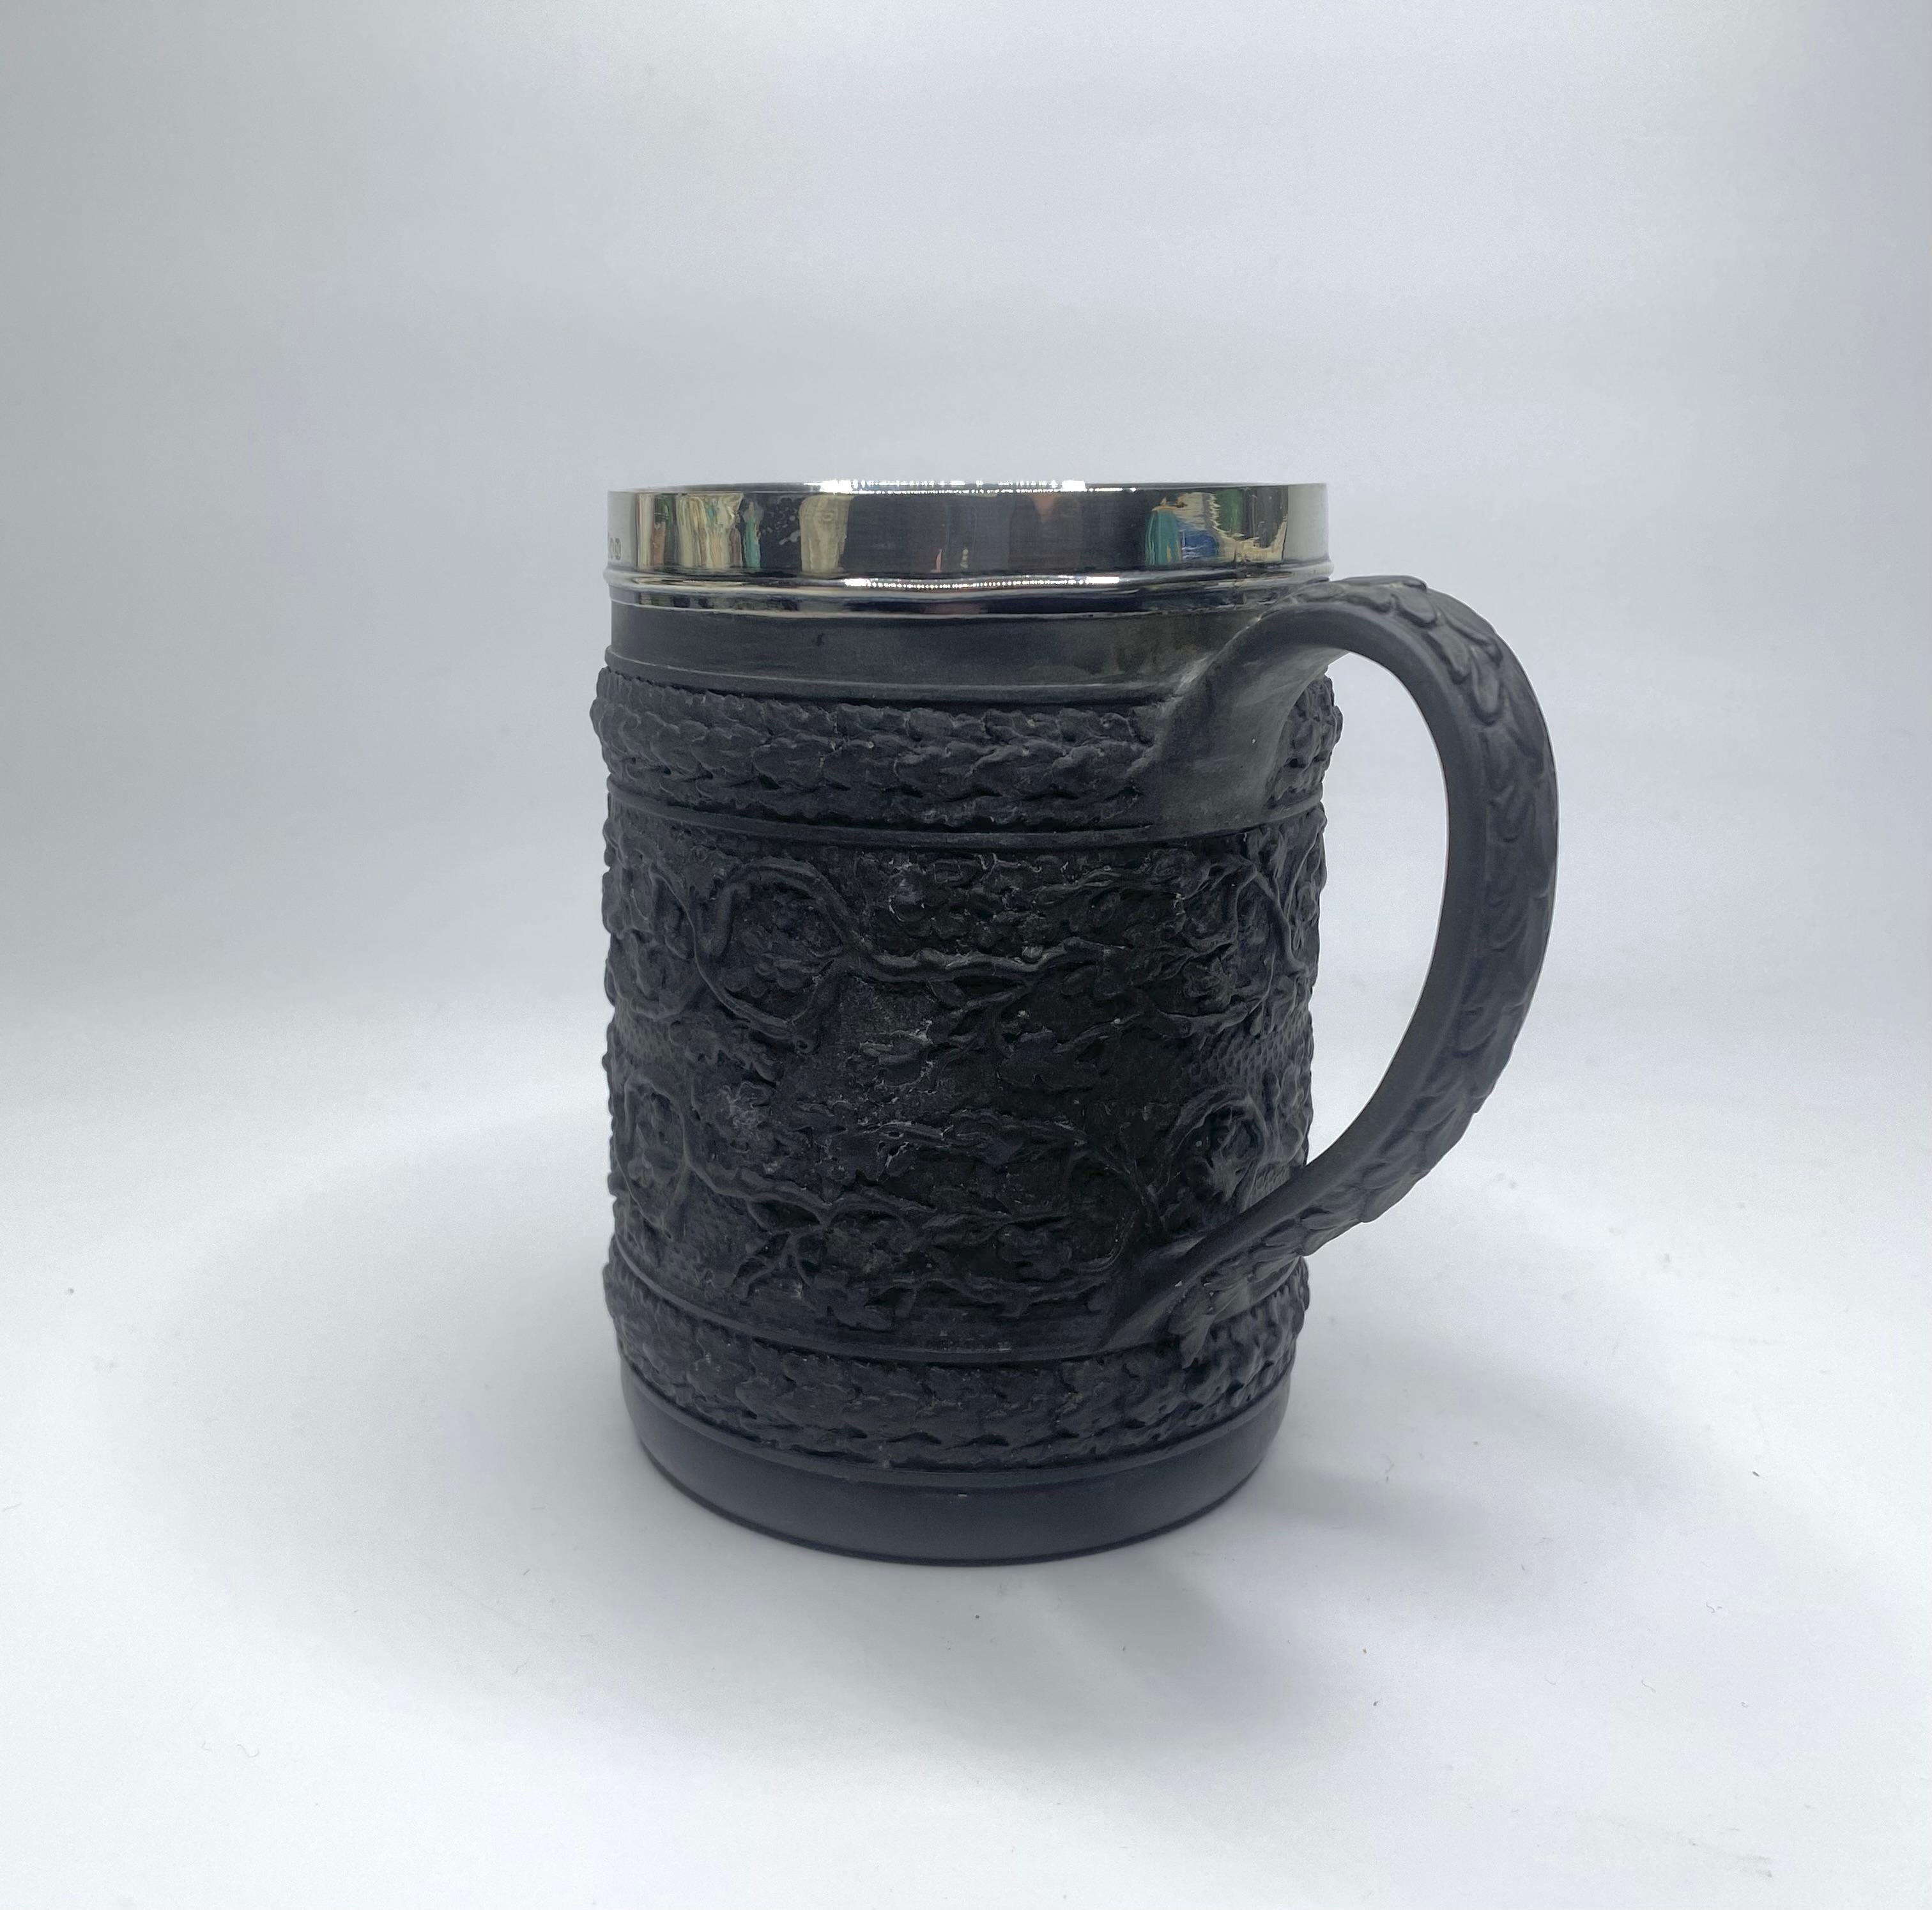 English Wedgwood black basalt mug, silver mounted, 1808.